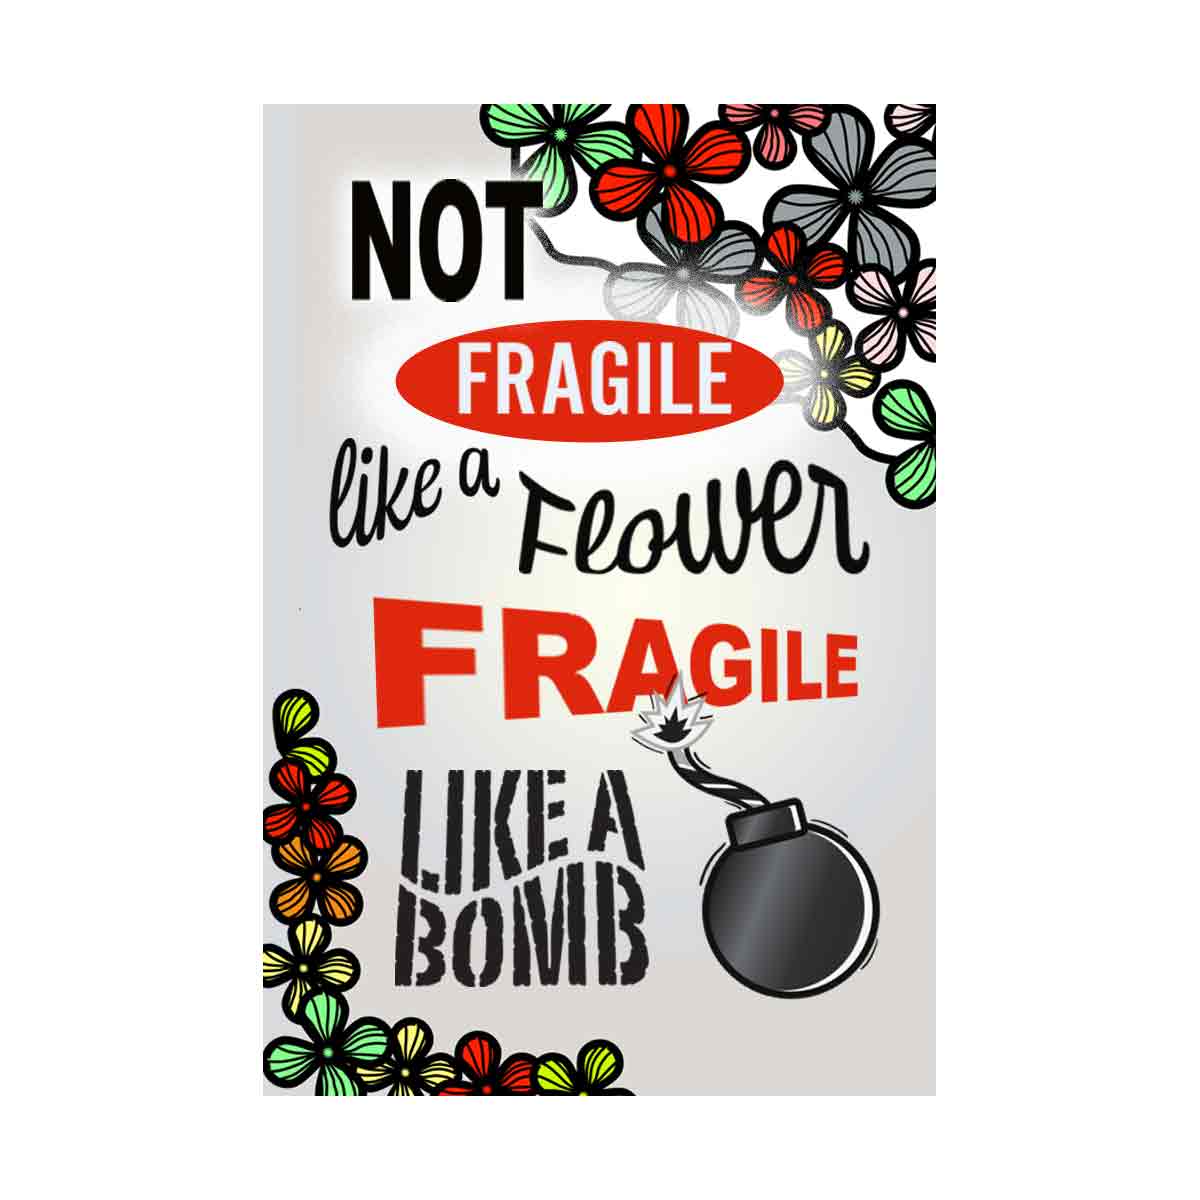 Not Fragile like a flower - Flower bomb